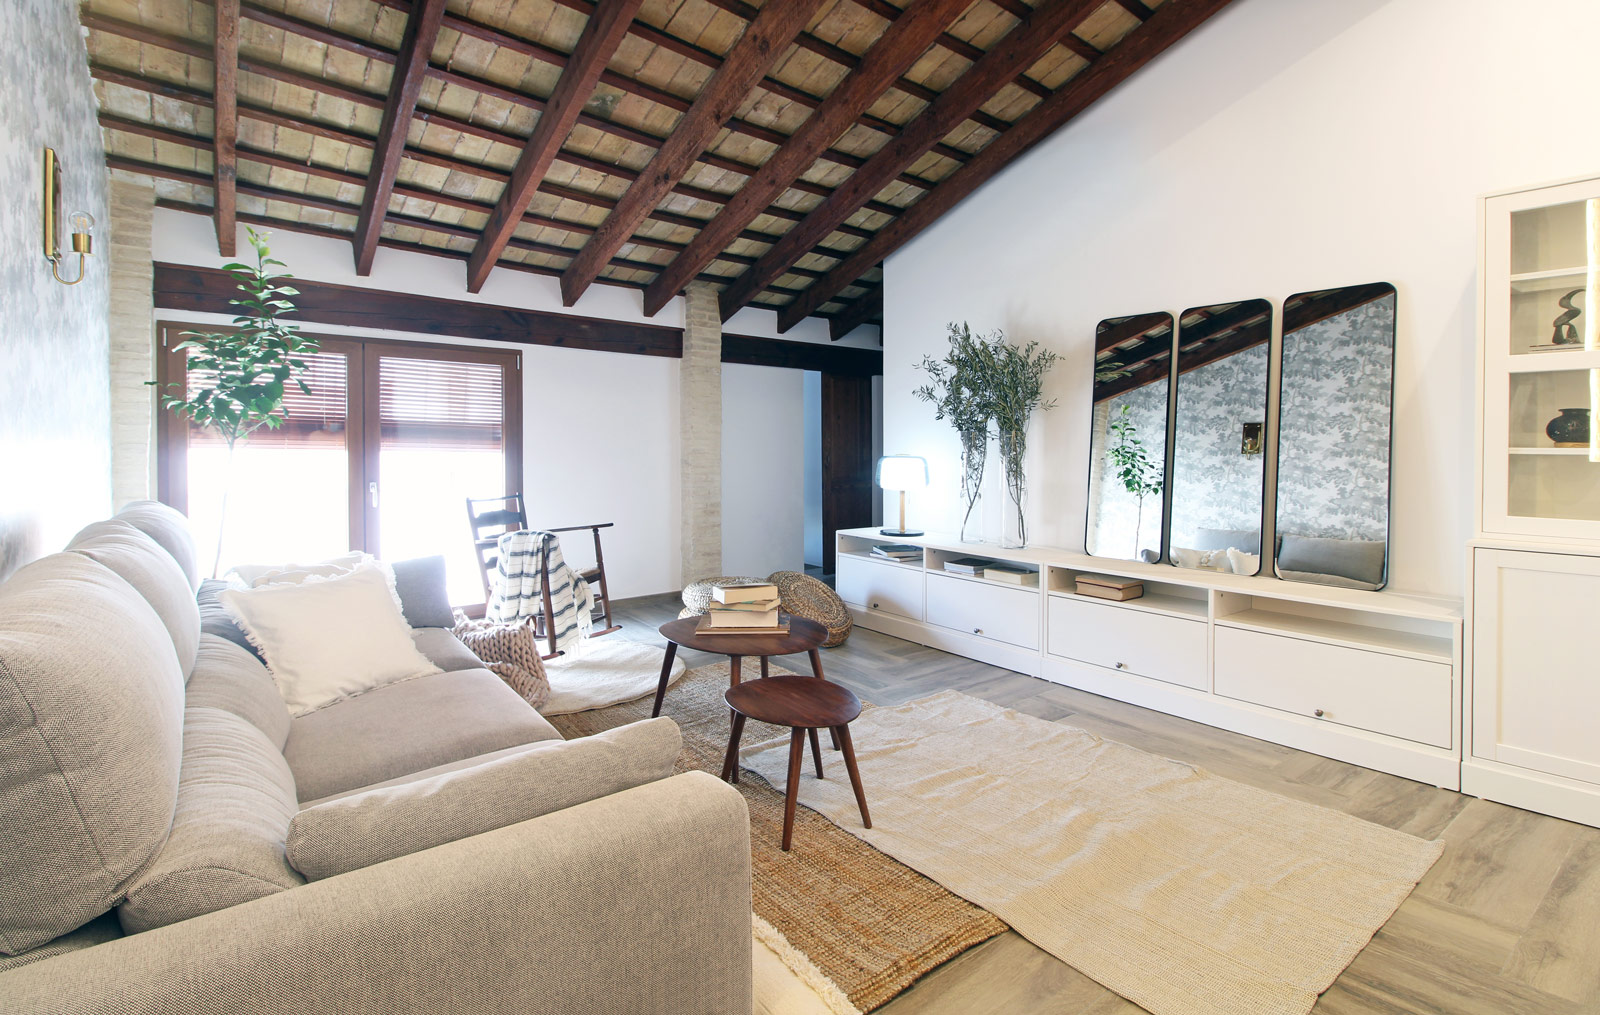 Plano completo del salón, techo con vigas de madera, mesitas de madera, sofá